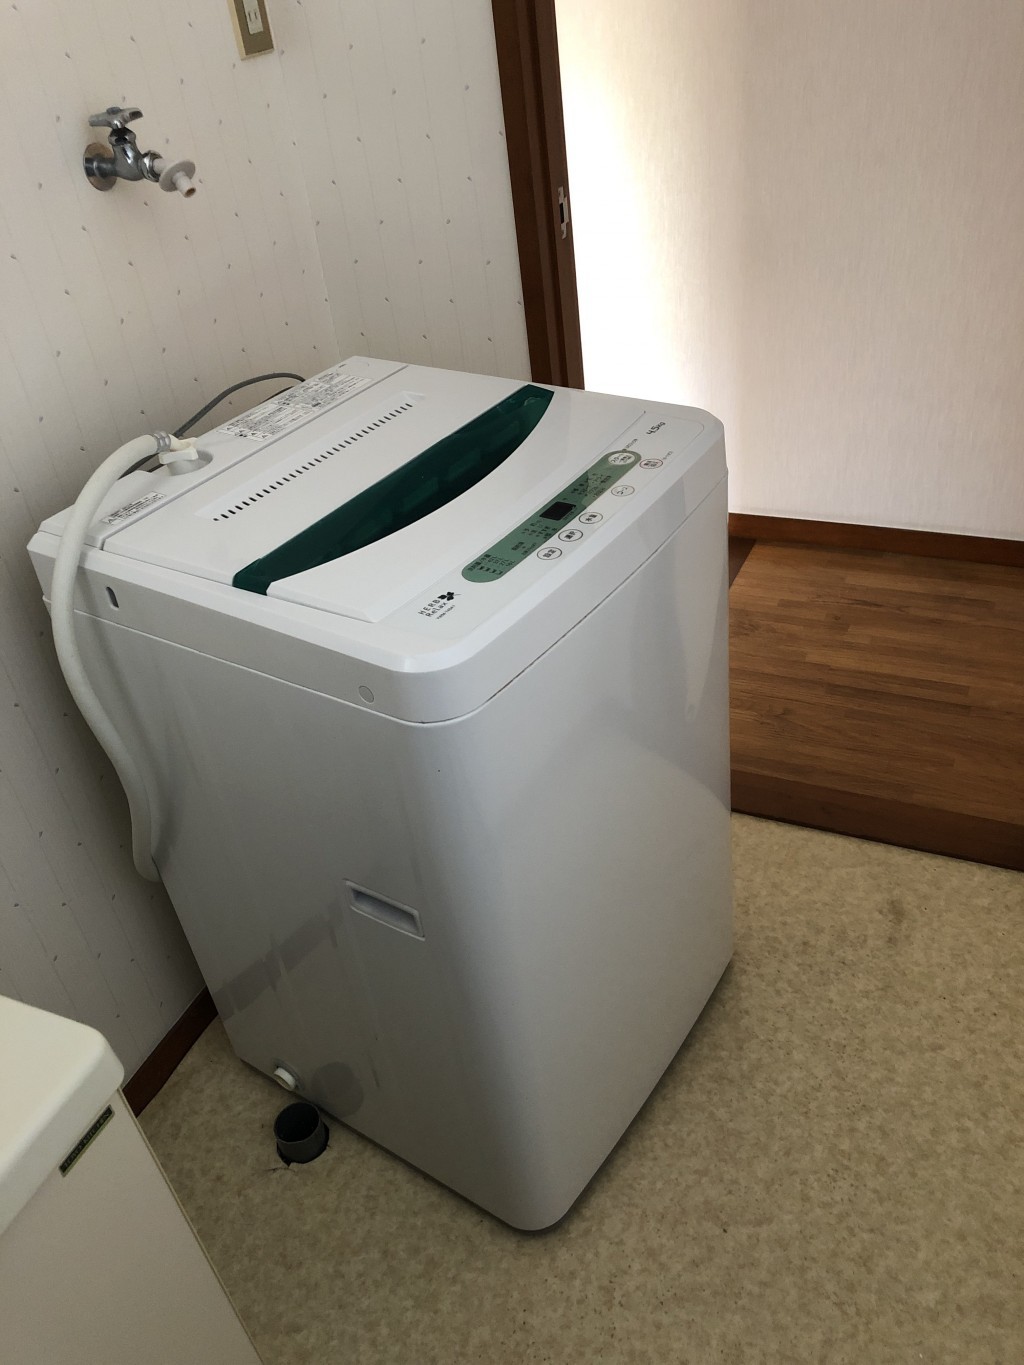 【伊東市】壊れた洗濯機の回収処分ご依頼☆対応がとても丁寧だったとご満足いただけました！